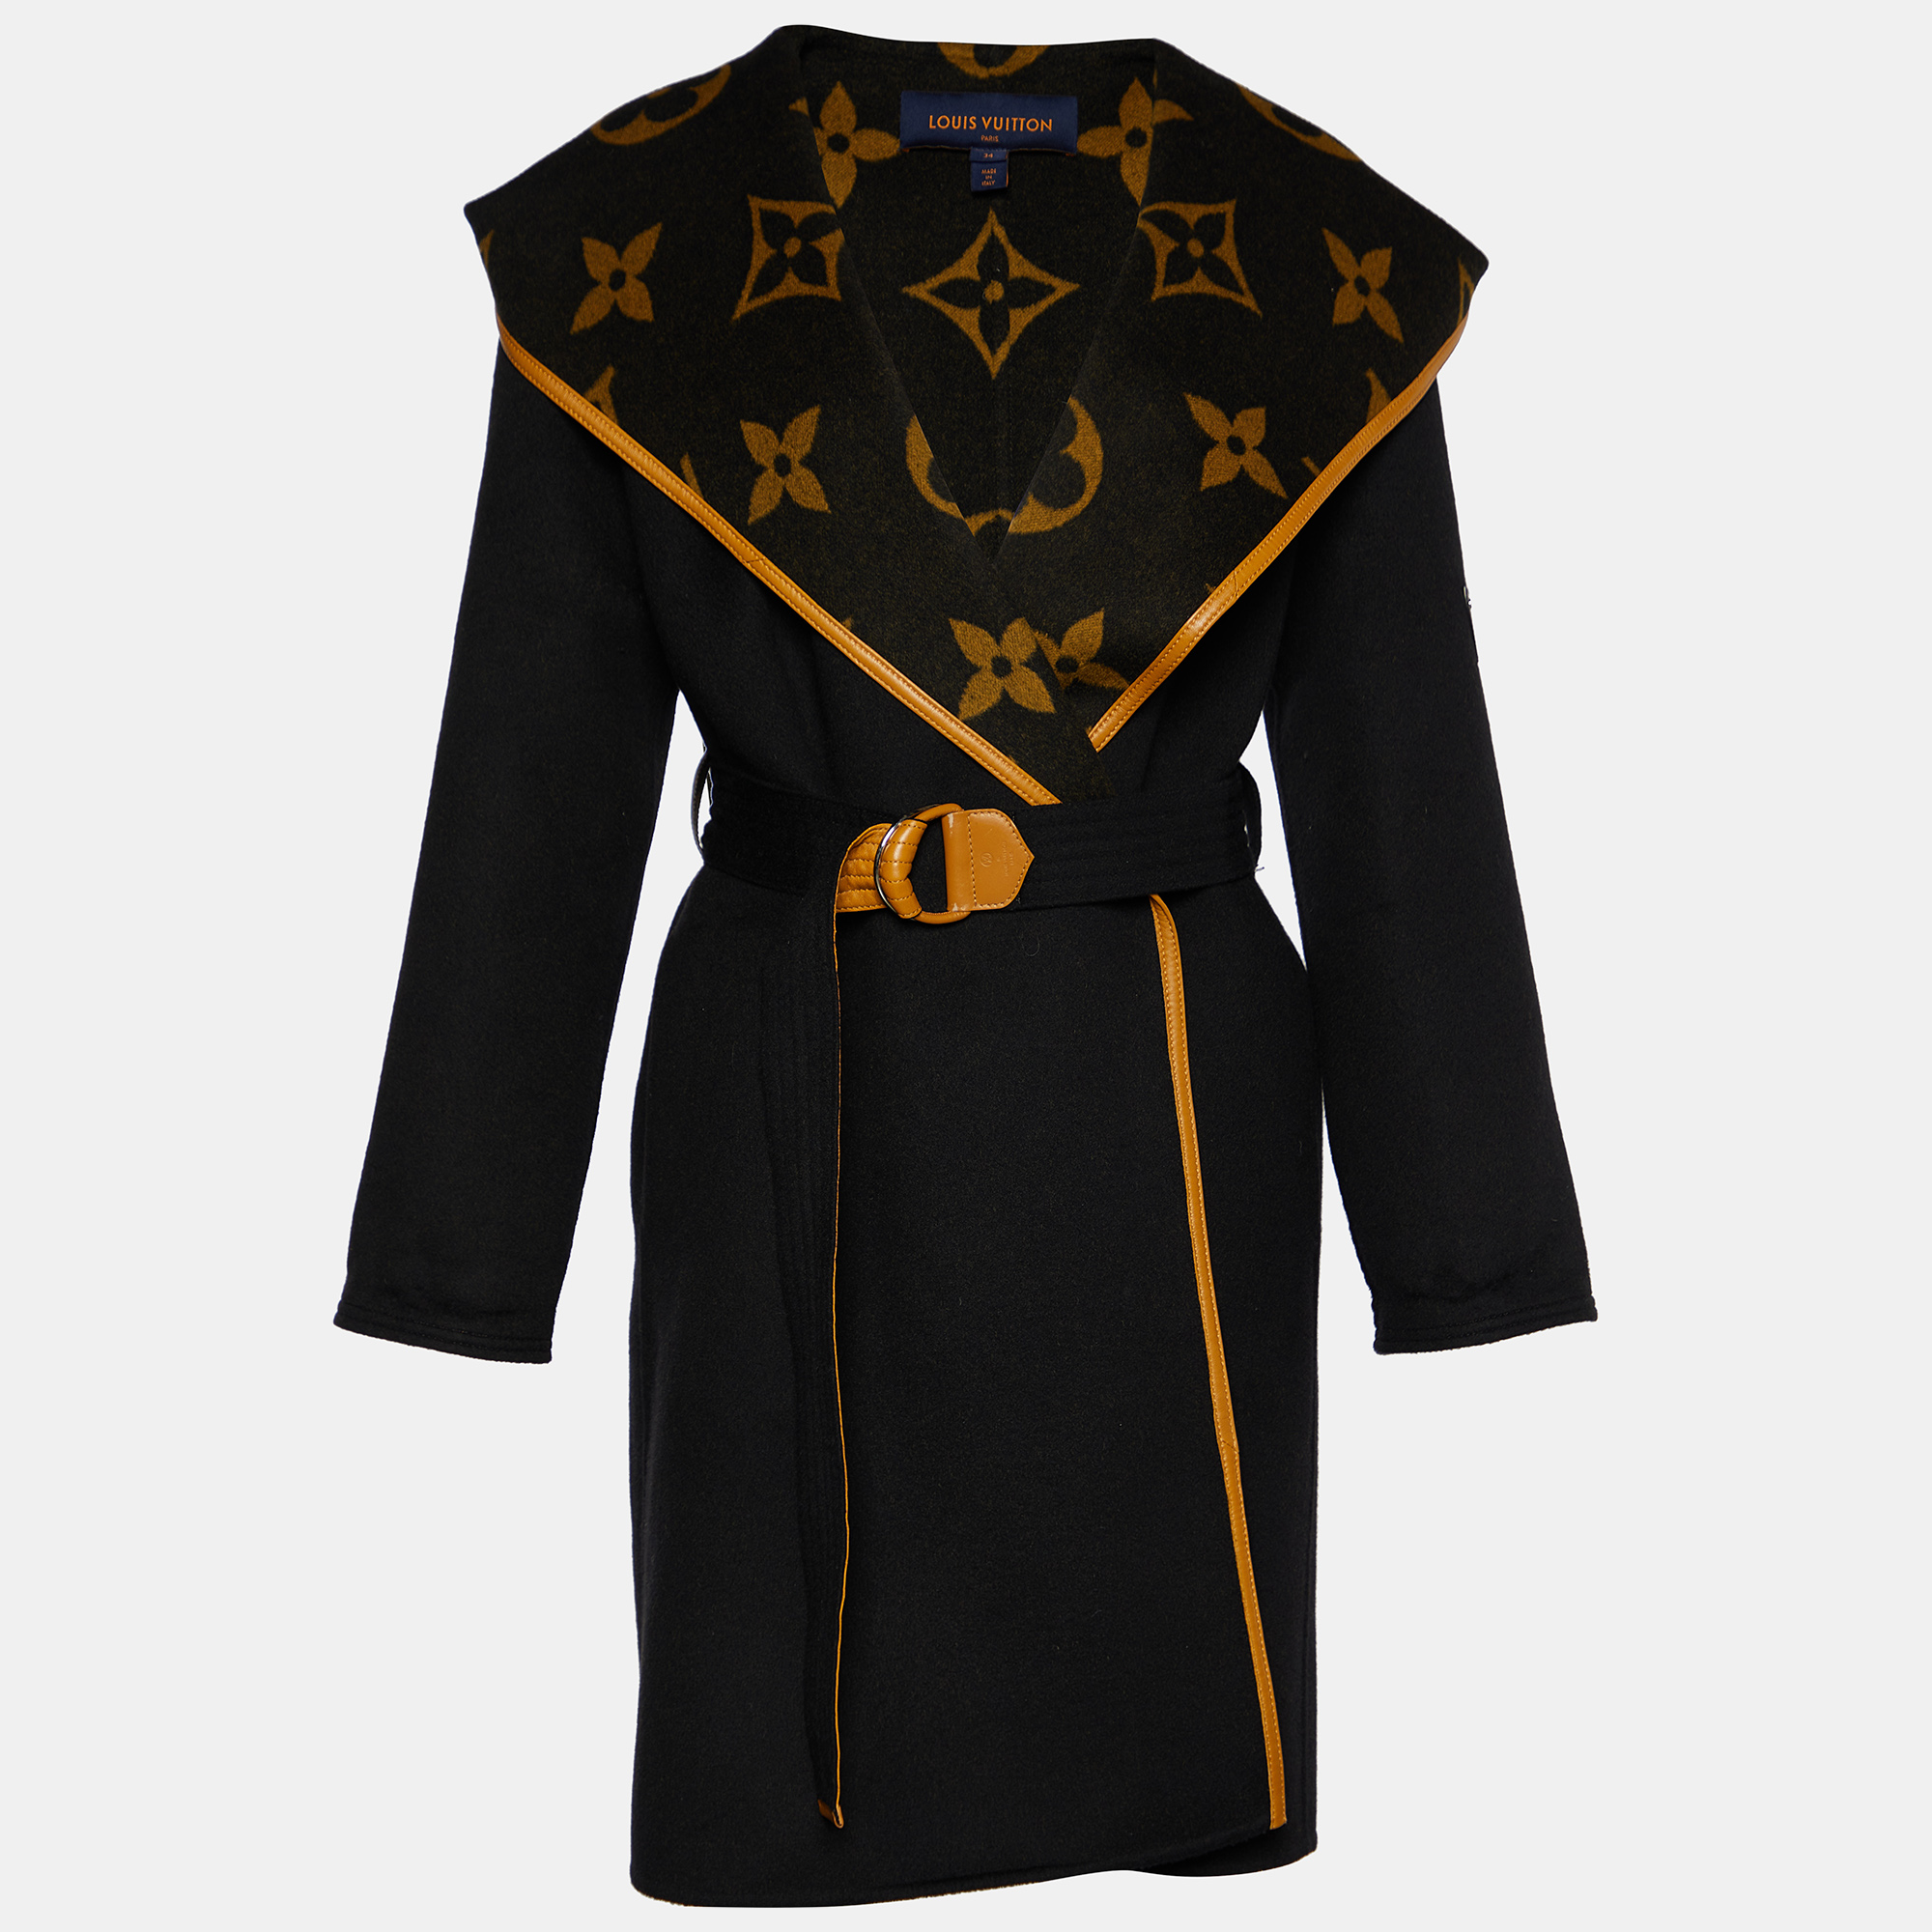 Louis Vuitton Coat